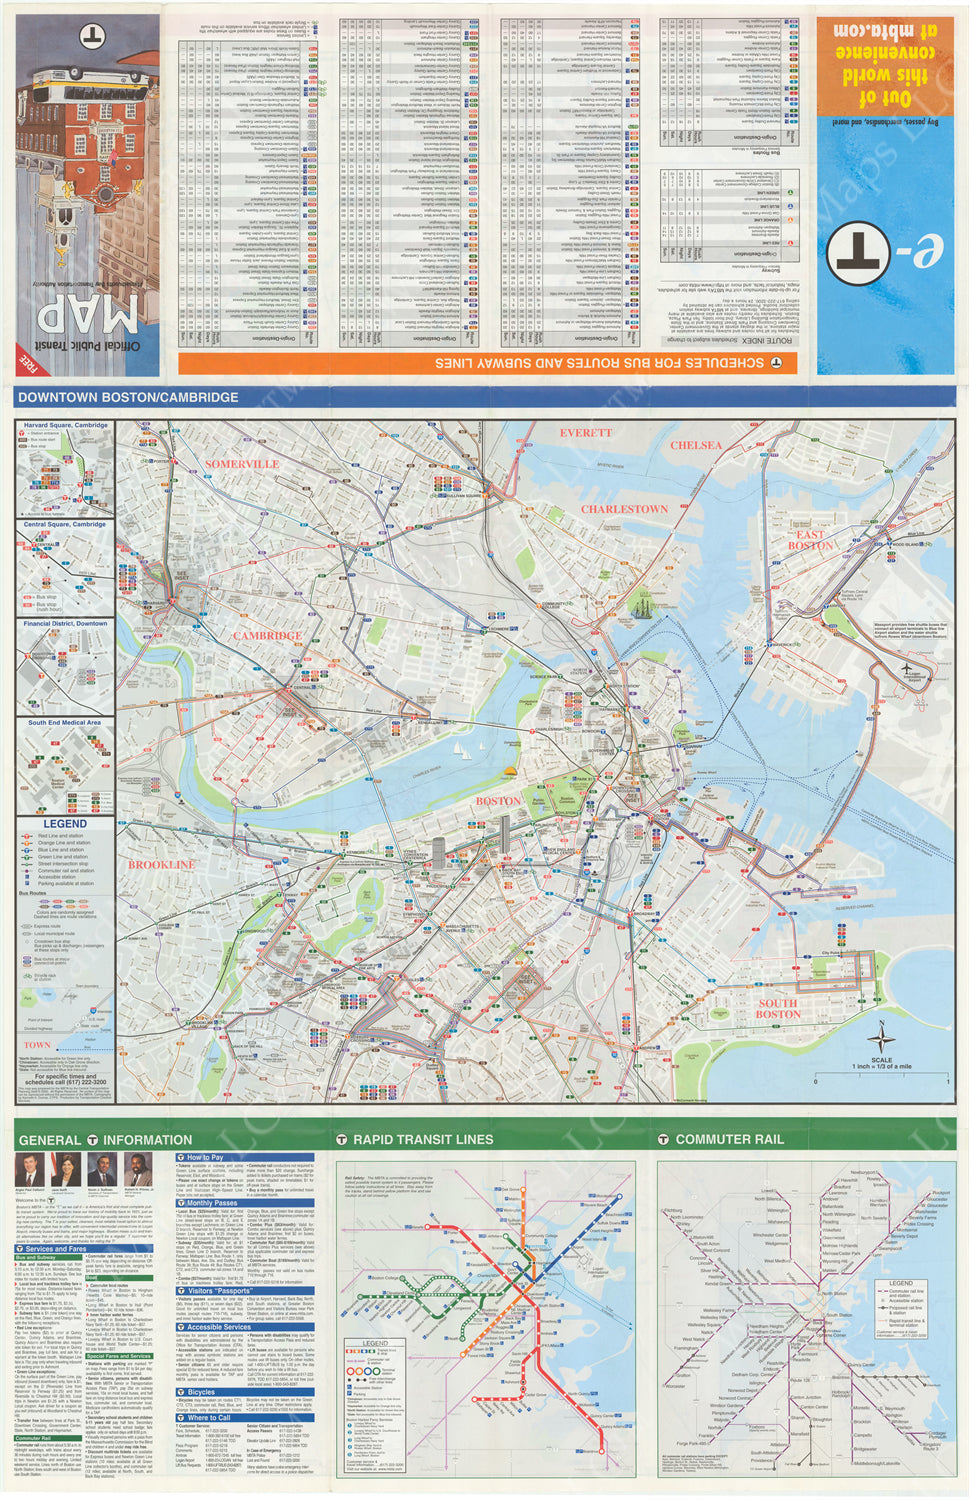 2000 MBTA System Map (Side B)